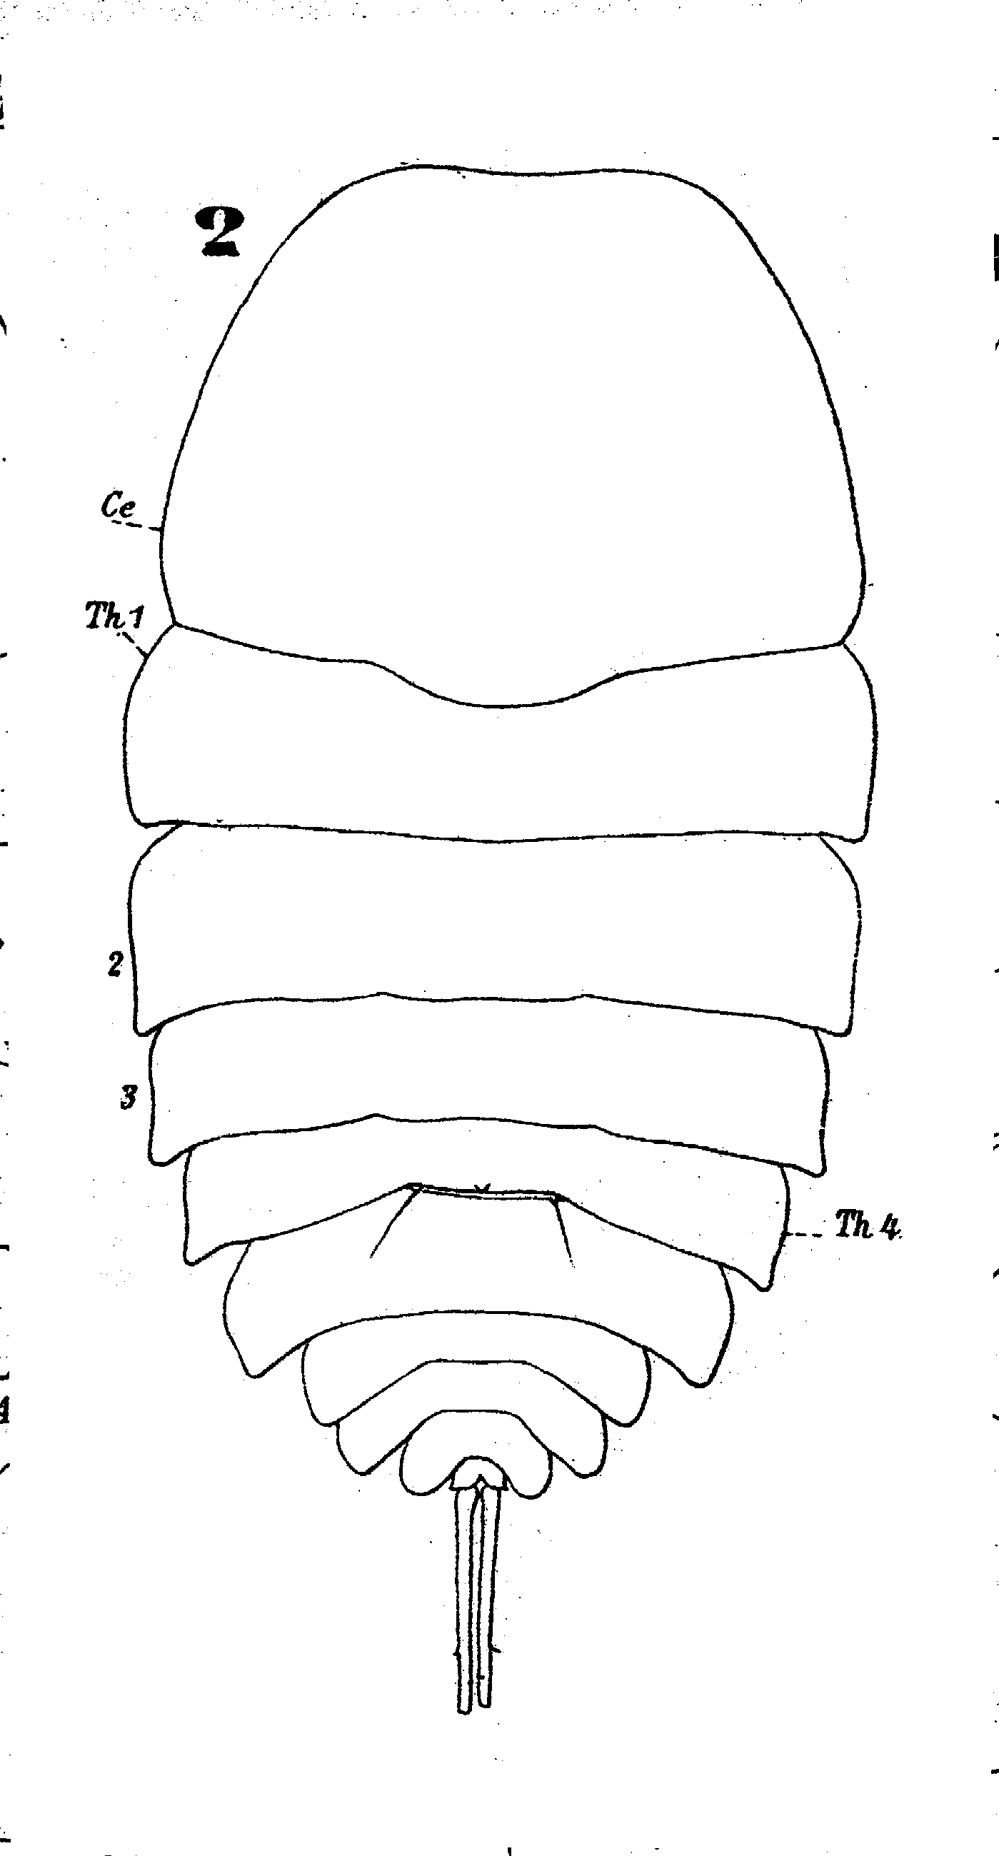 Espèce Copilia mediterranea - Planche 3 de figures morphologiques